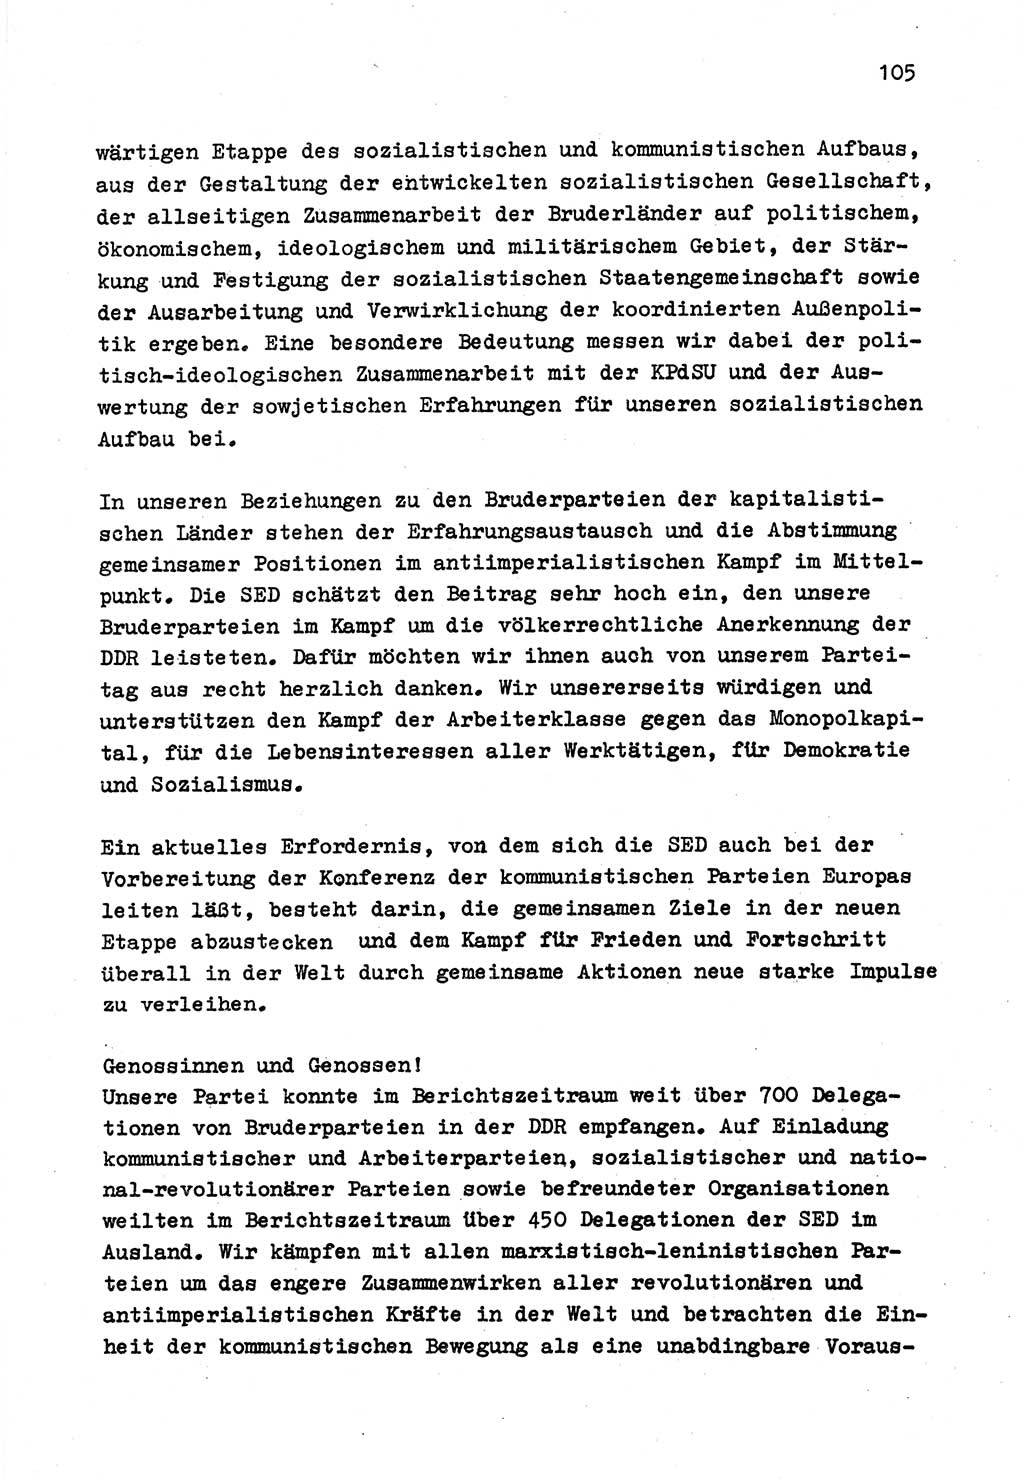 Zu Fragen der Parteiarbeit [Sozialistische Einheitspartei Deutschlands (SED) Deutsche Demokratische Republik (DDR)] 1979, Seite 105 (Fr. PA SED DDR 1979, S. 105)